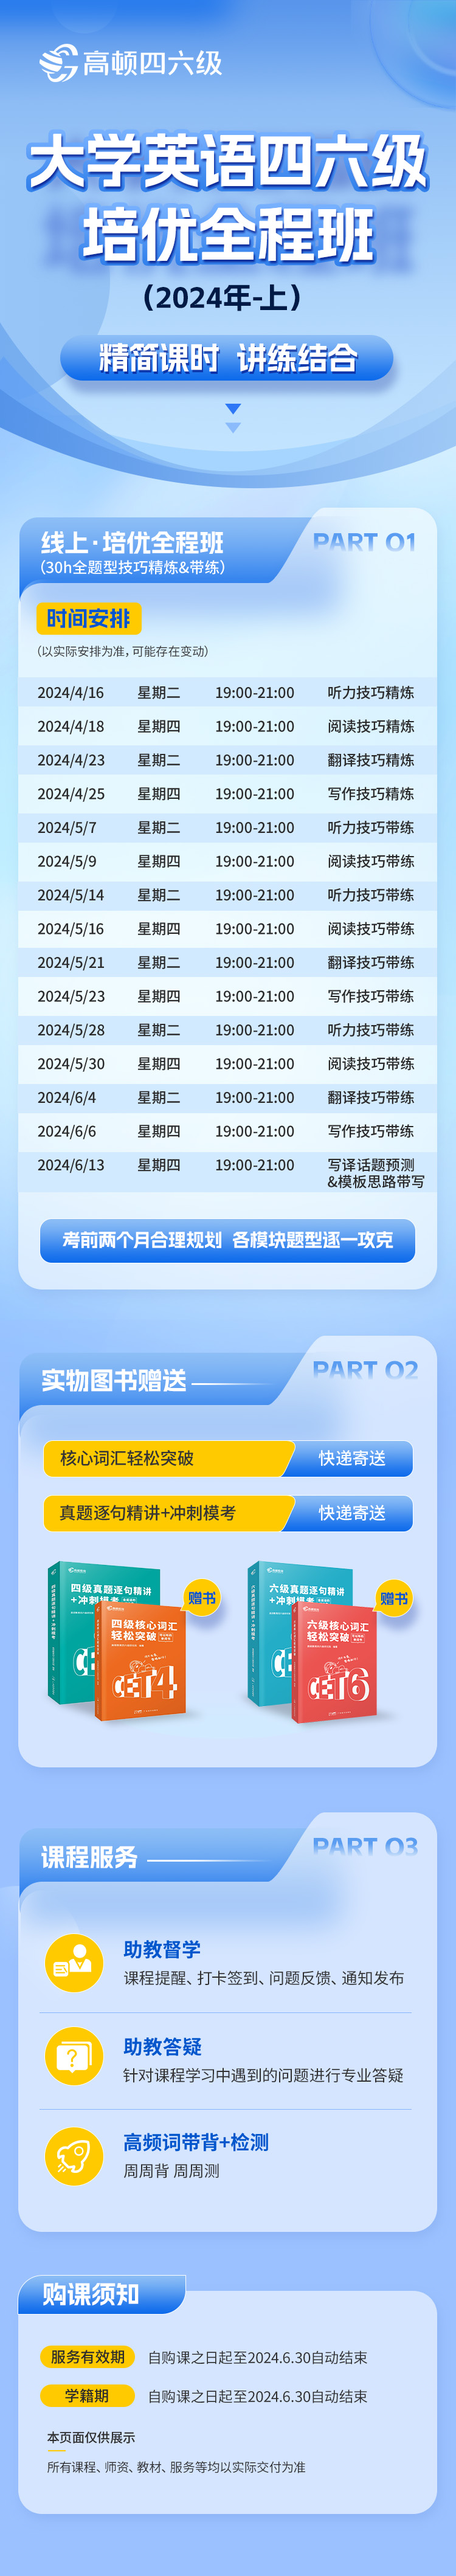 https://simg01.gaodunwangxiao.com/uploadfiles/product-center/202404/28/189ec_20240428111612.jpg